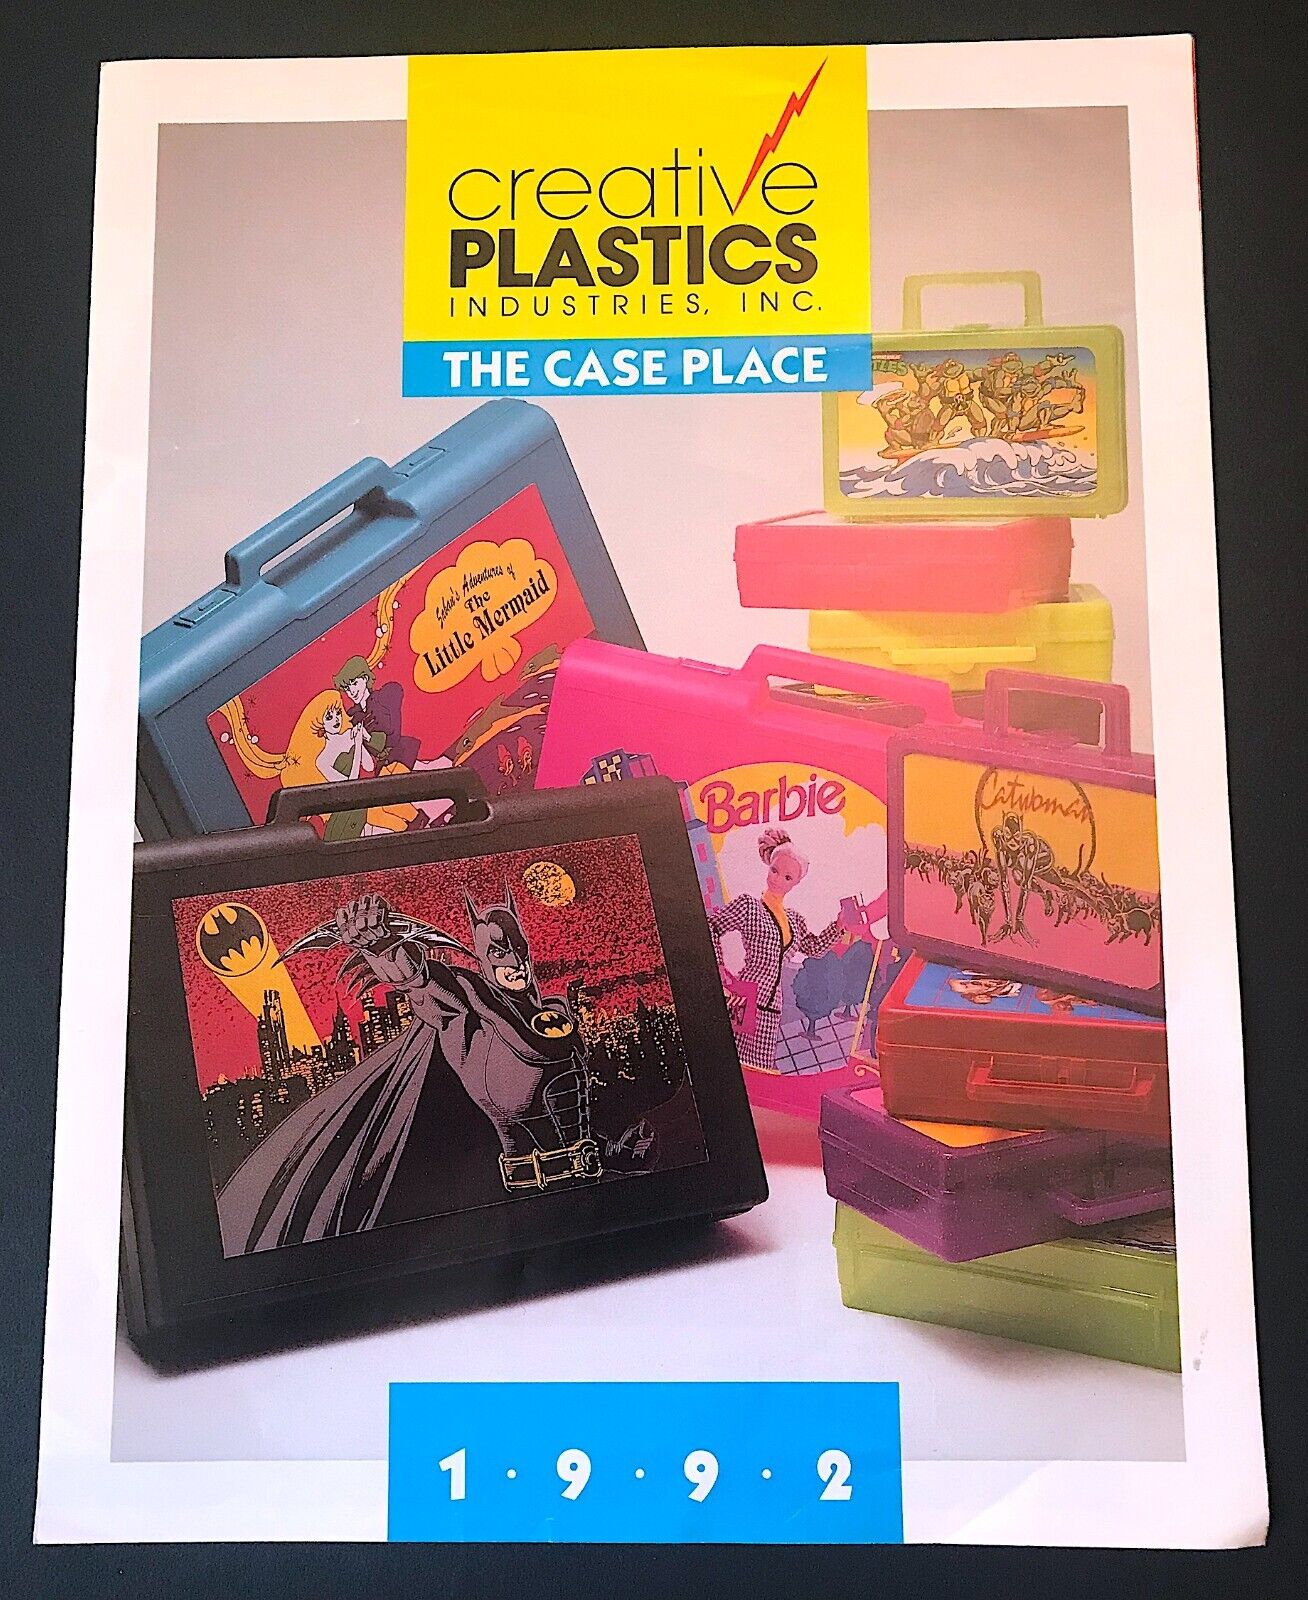 Creative Plastics 4 pg brochure-Batman®, Teenage Mutant Ninja TurtlesTM, Barbie®